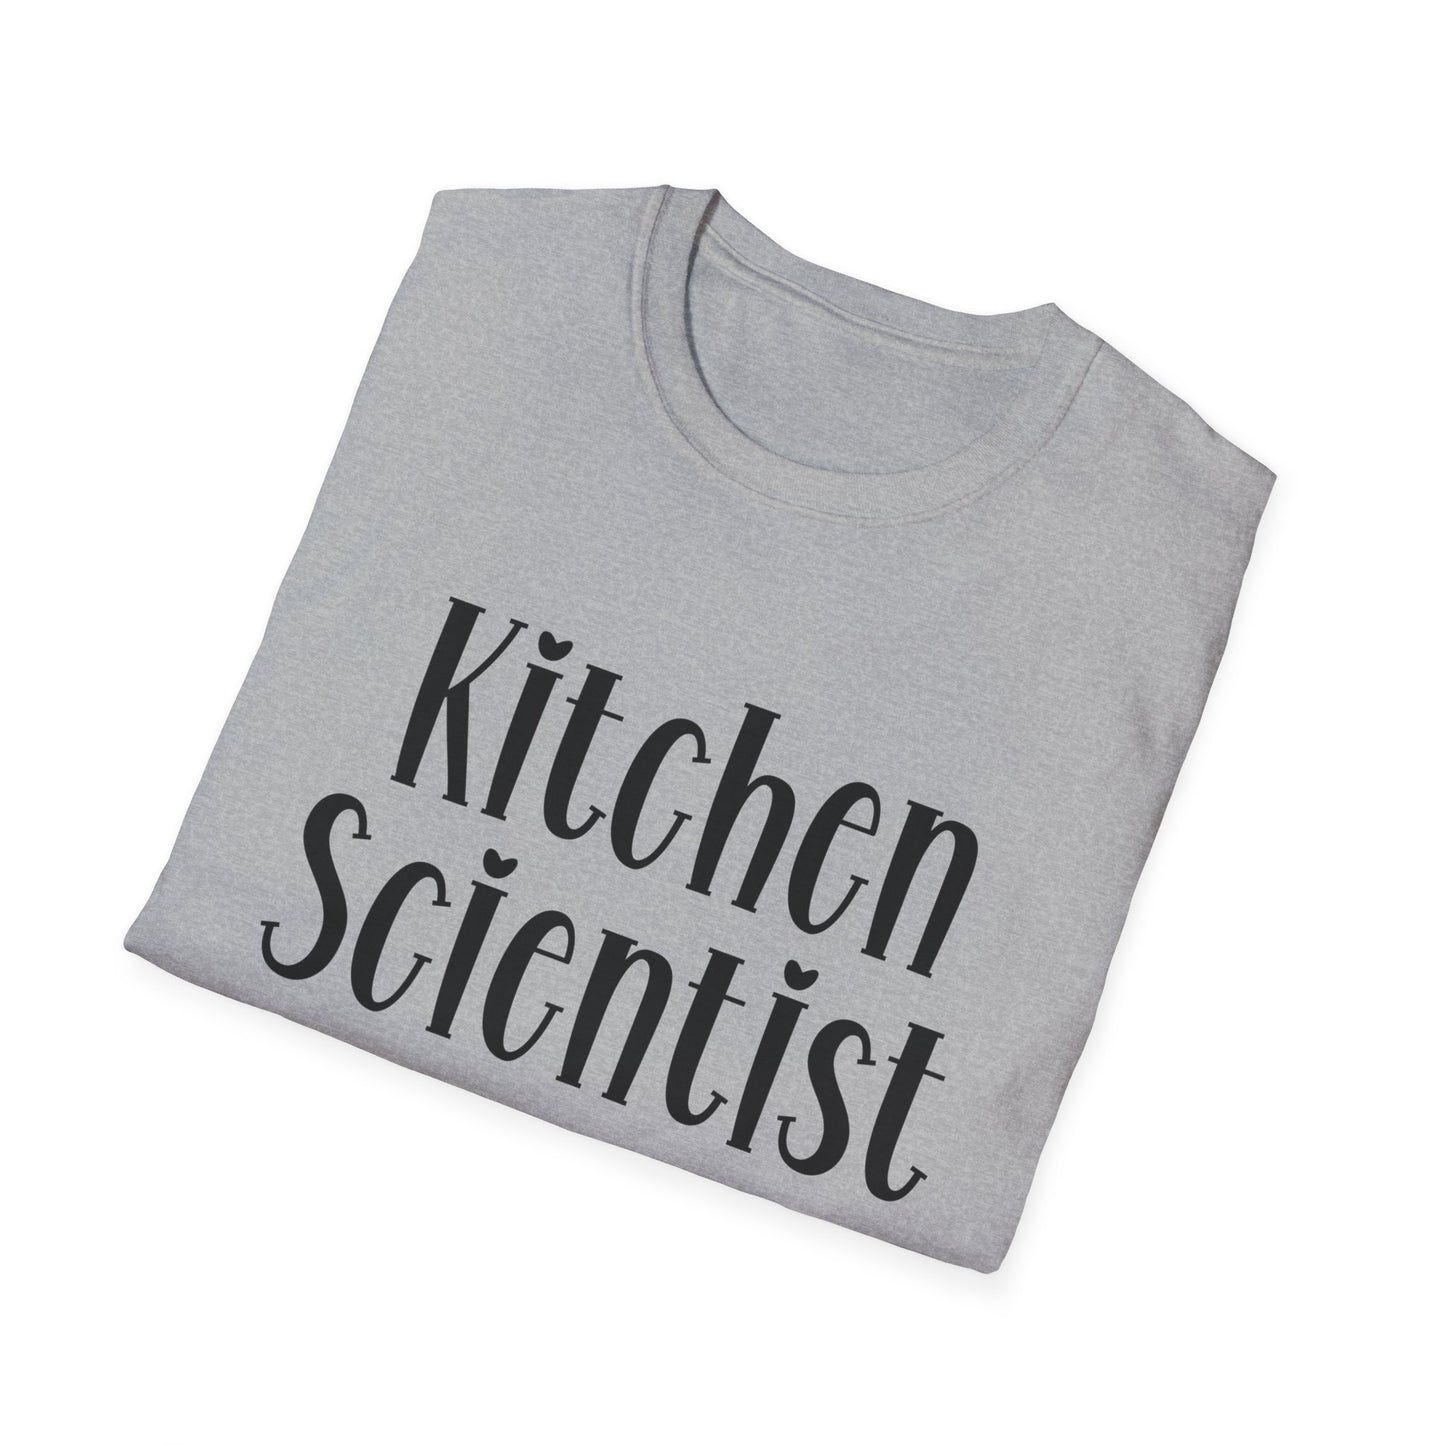 Kitchen Scientist